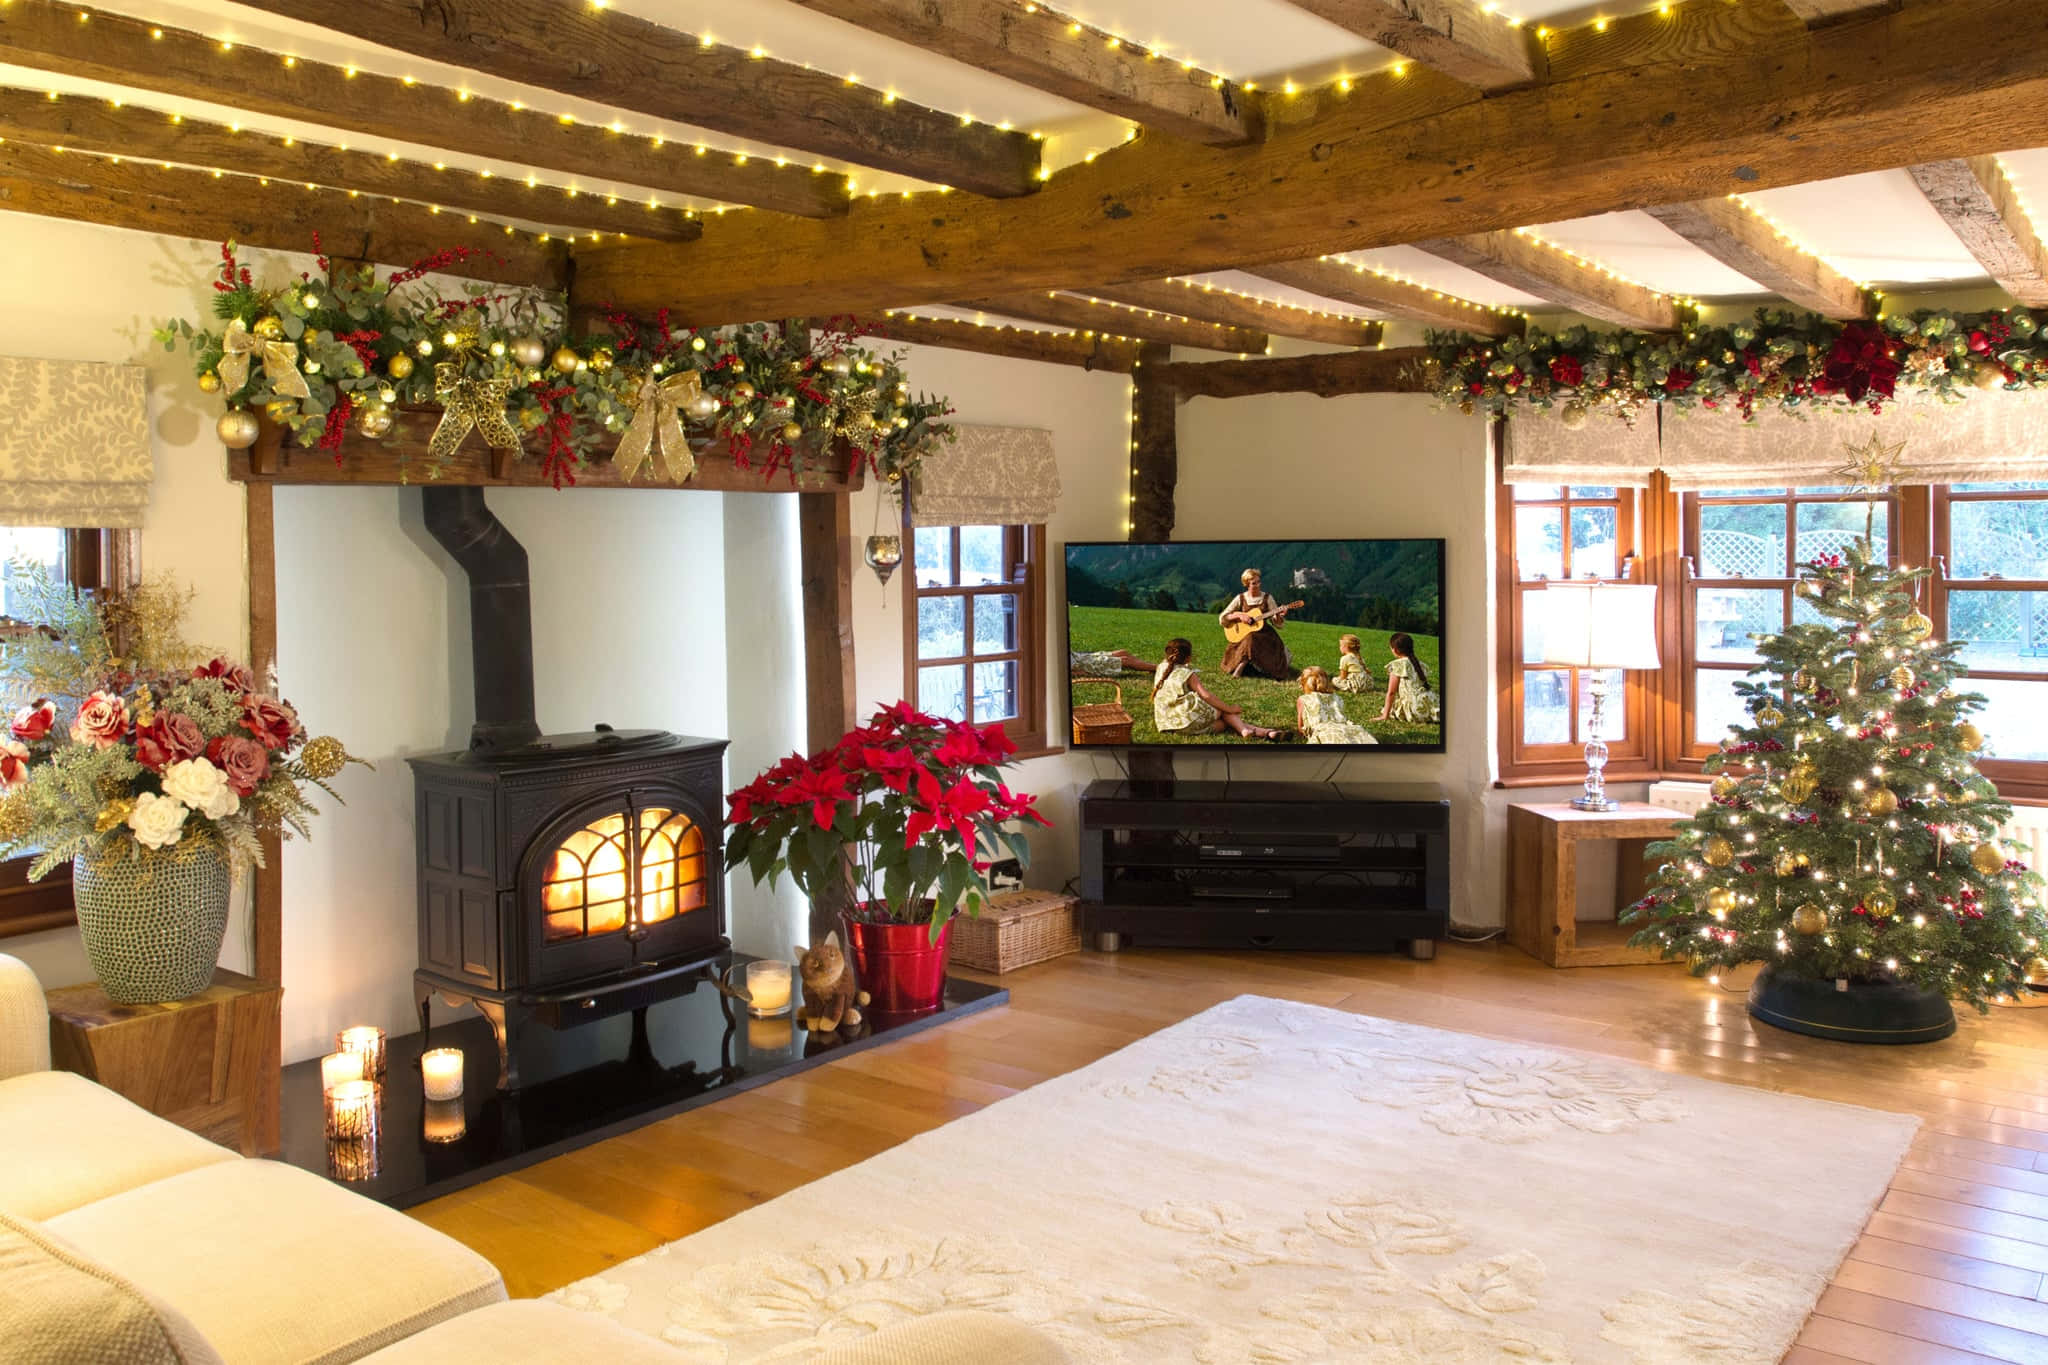 Et stue med en brændeovn og juledekorationer